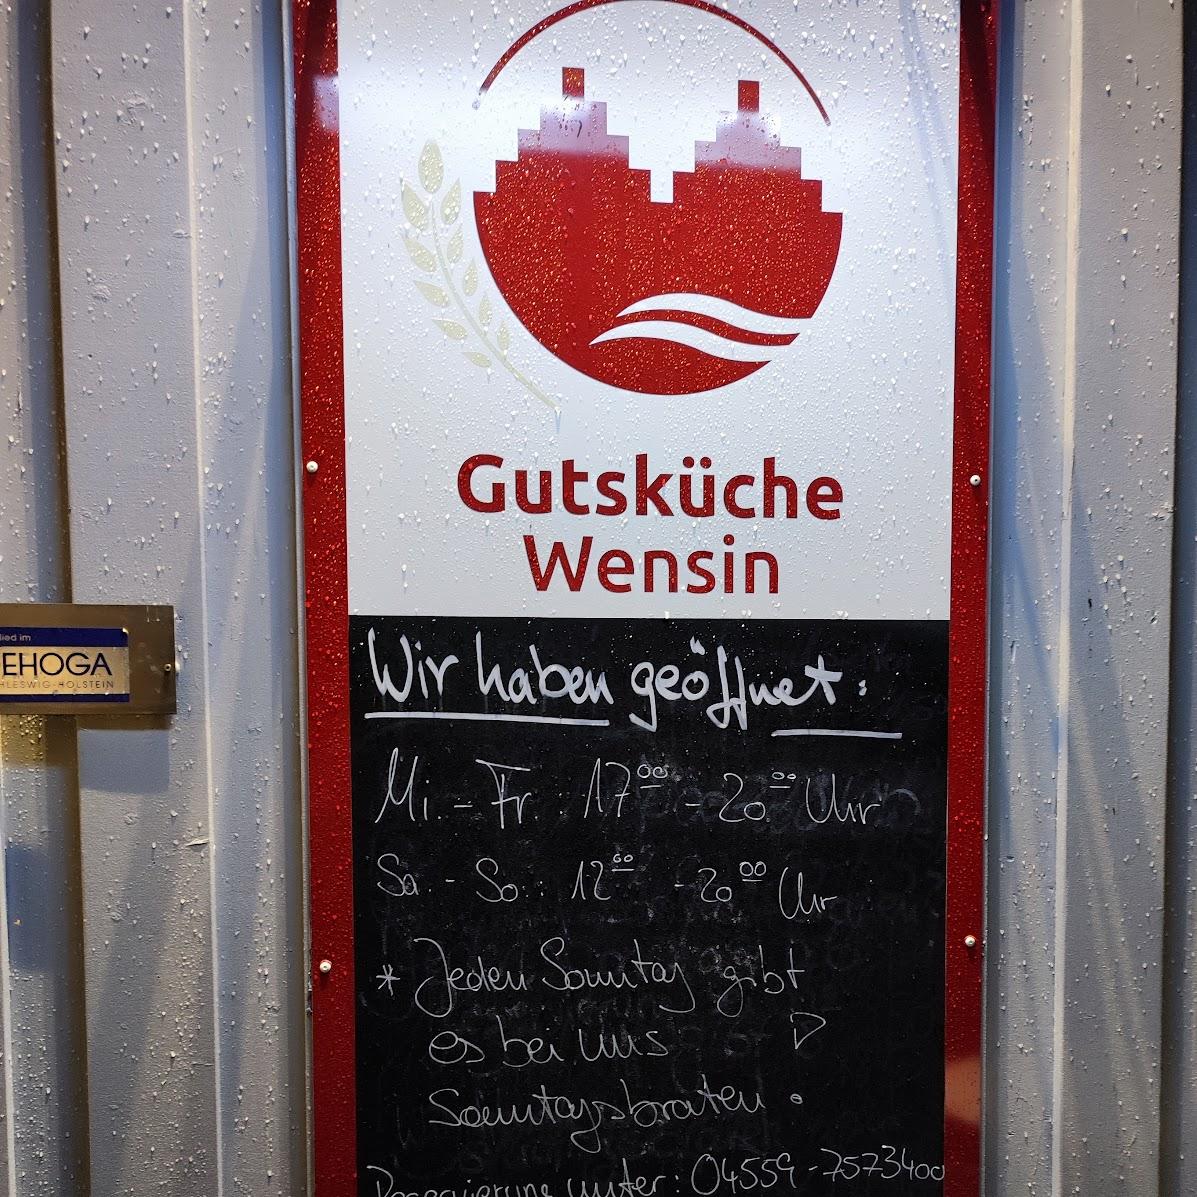 Restaurant "Gutsküche" in Wensin